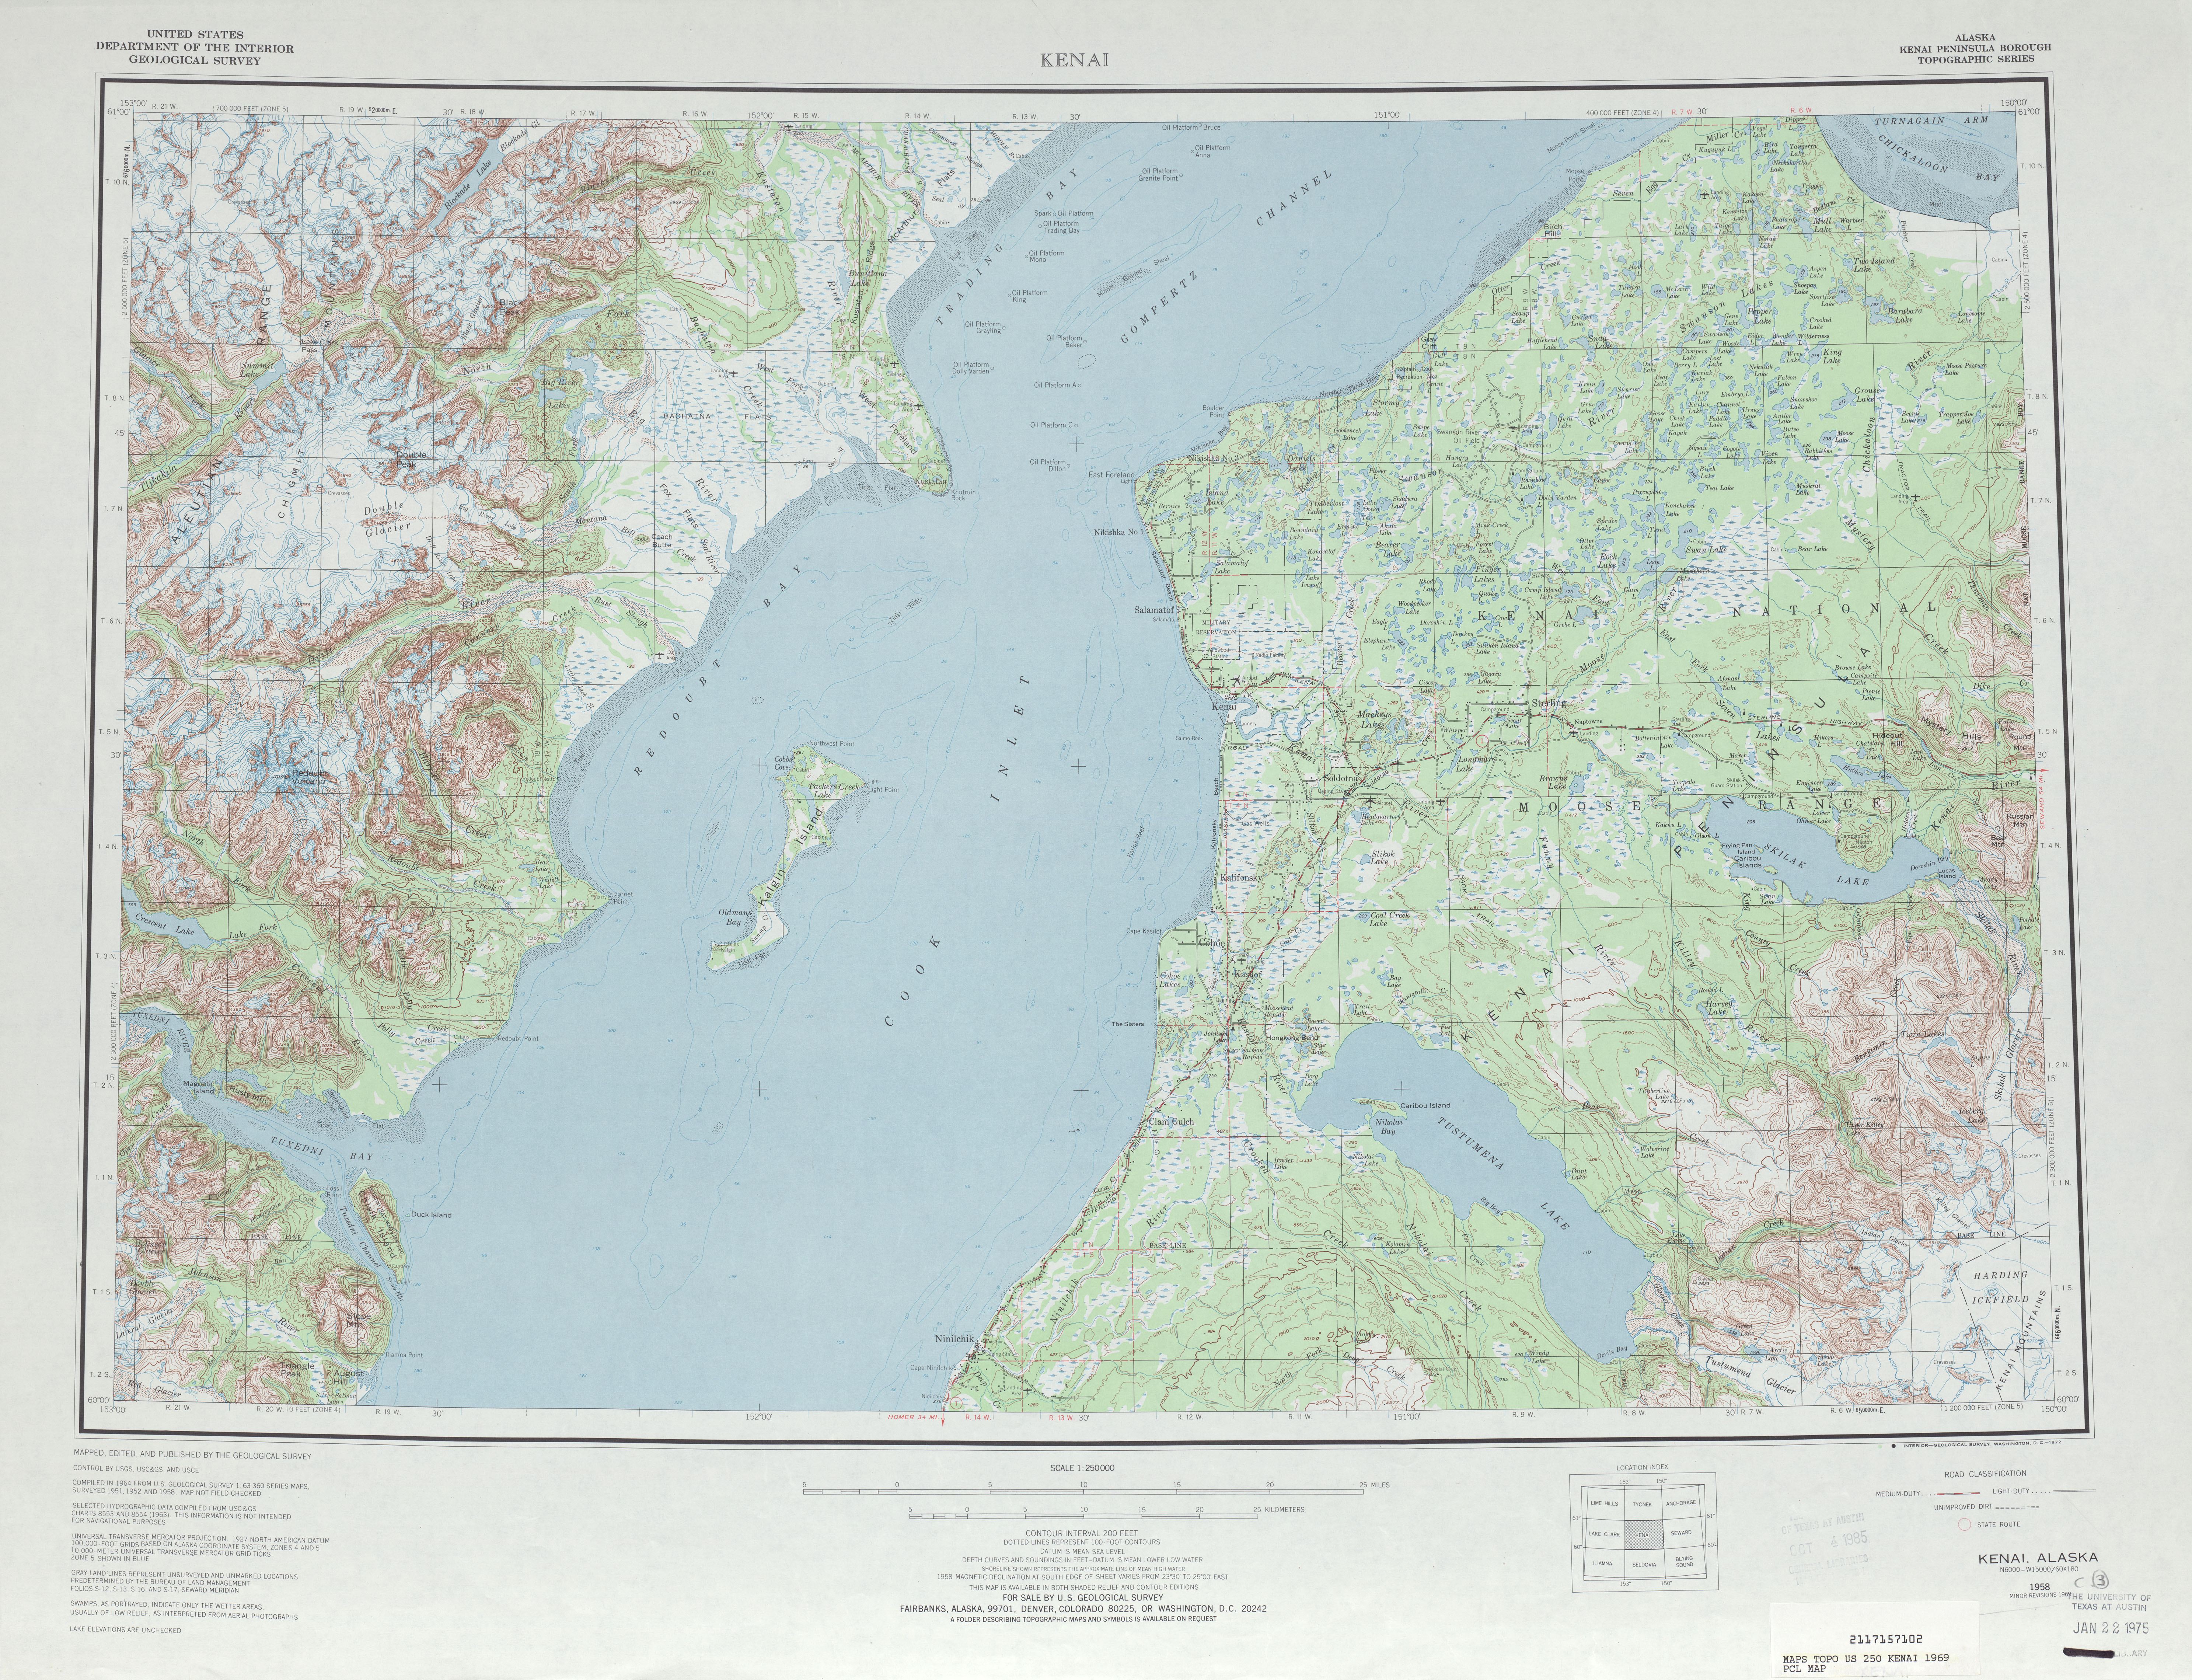 Hoja Kenai del Mapa Topográfico de los Estados Unidos 1969